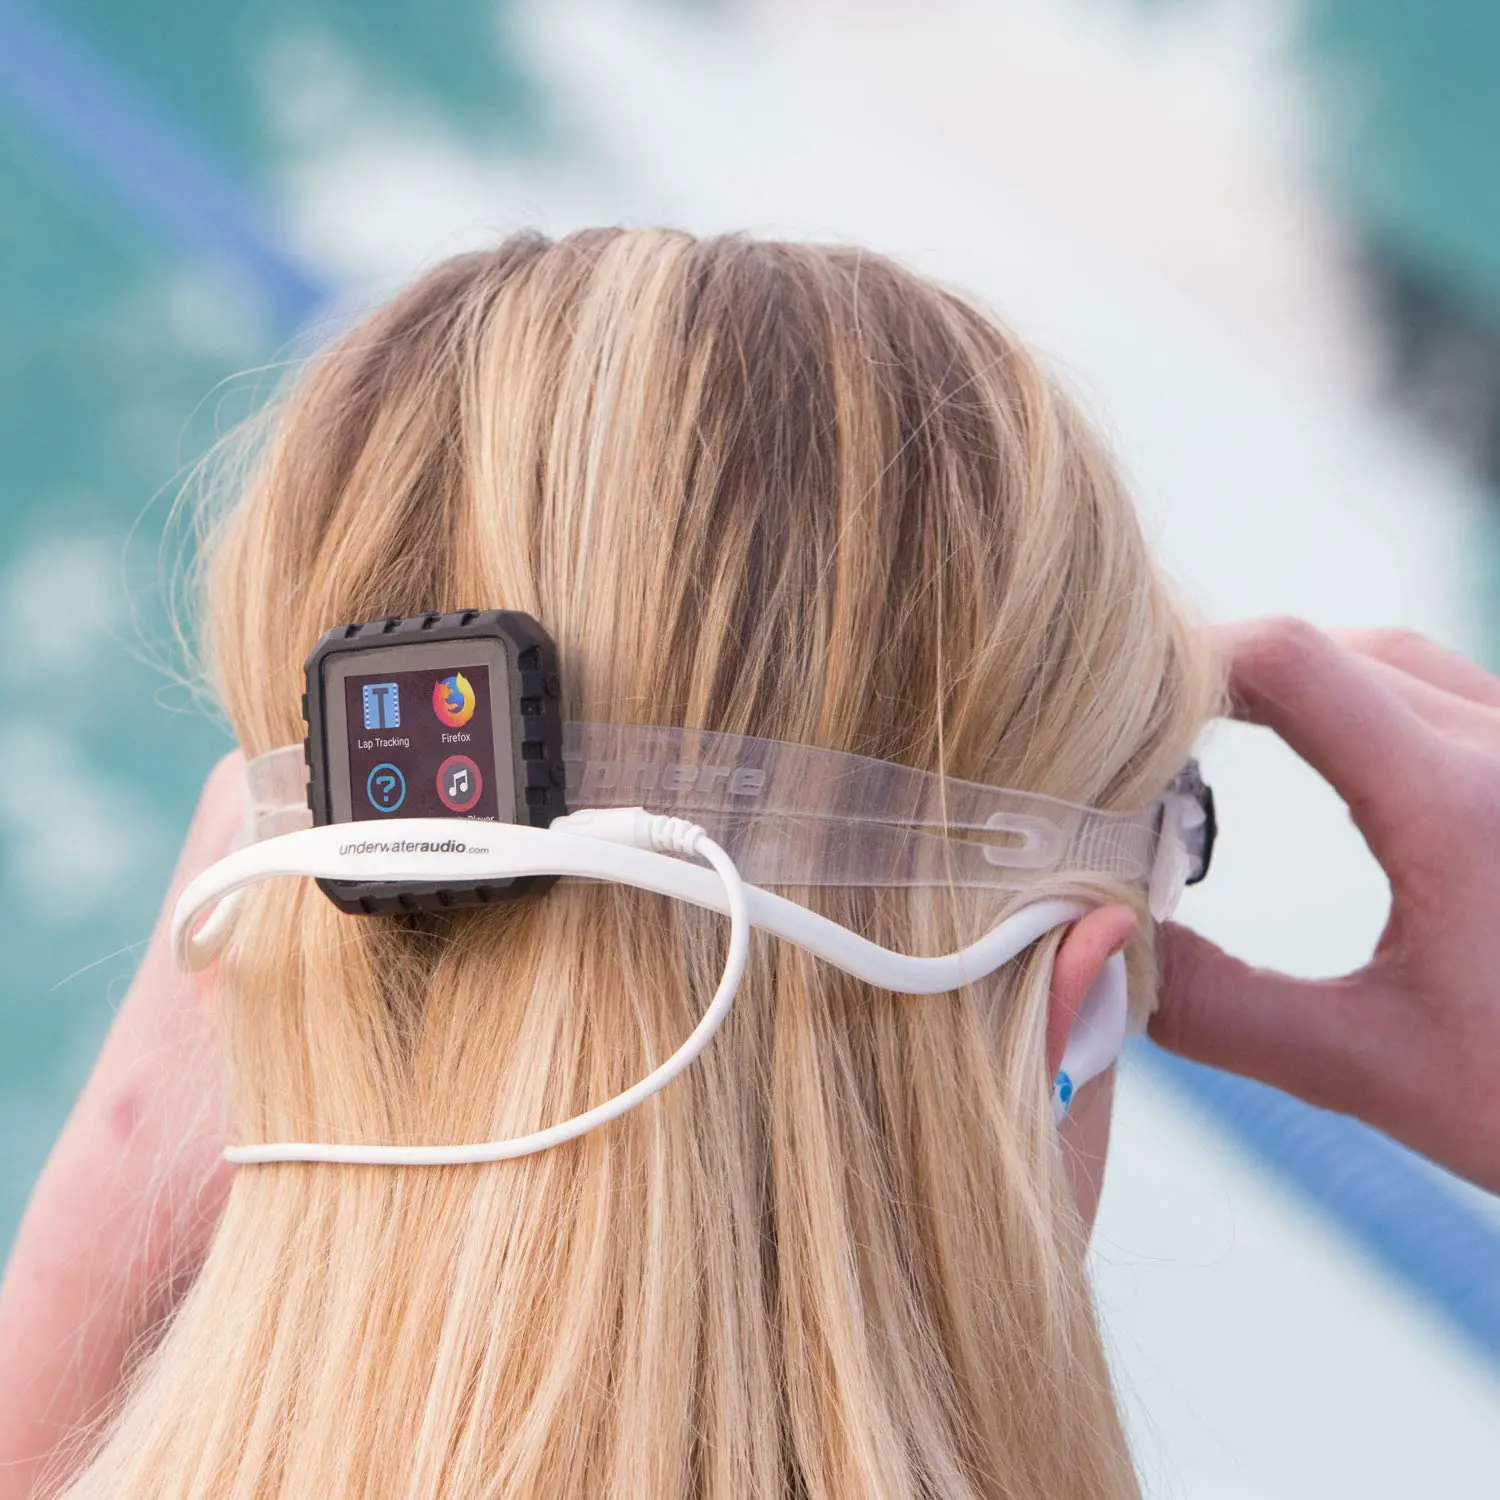 Best Waterproof Headphones for Swimming